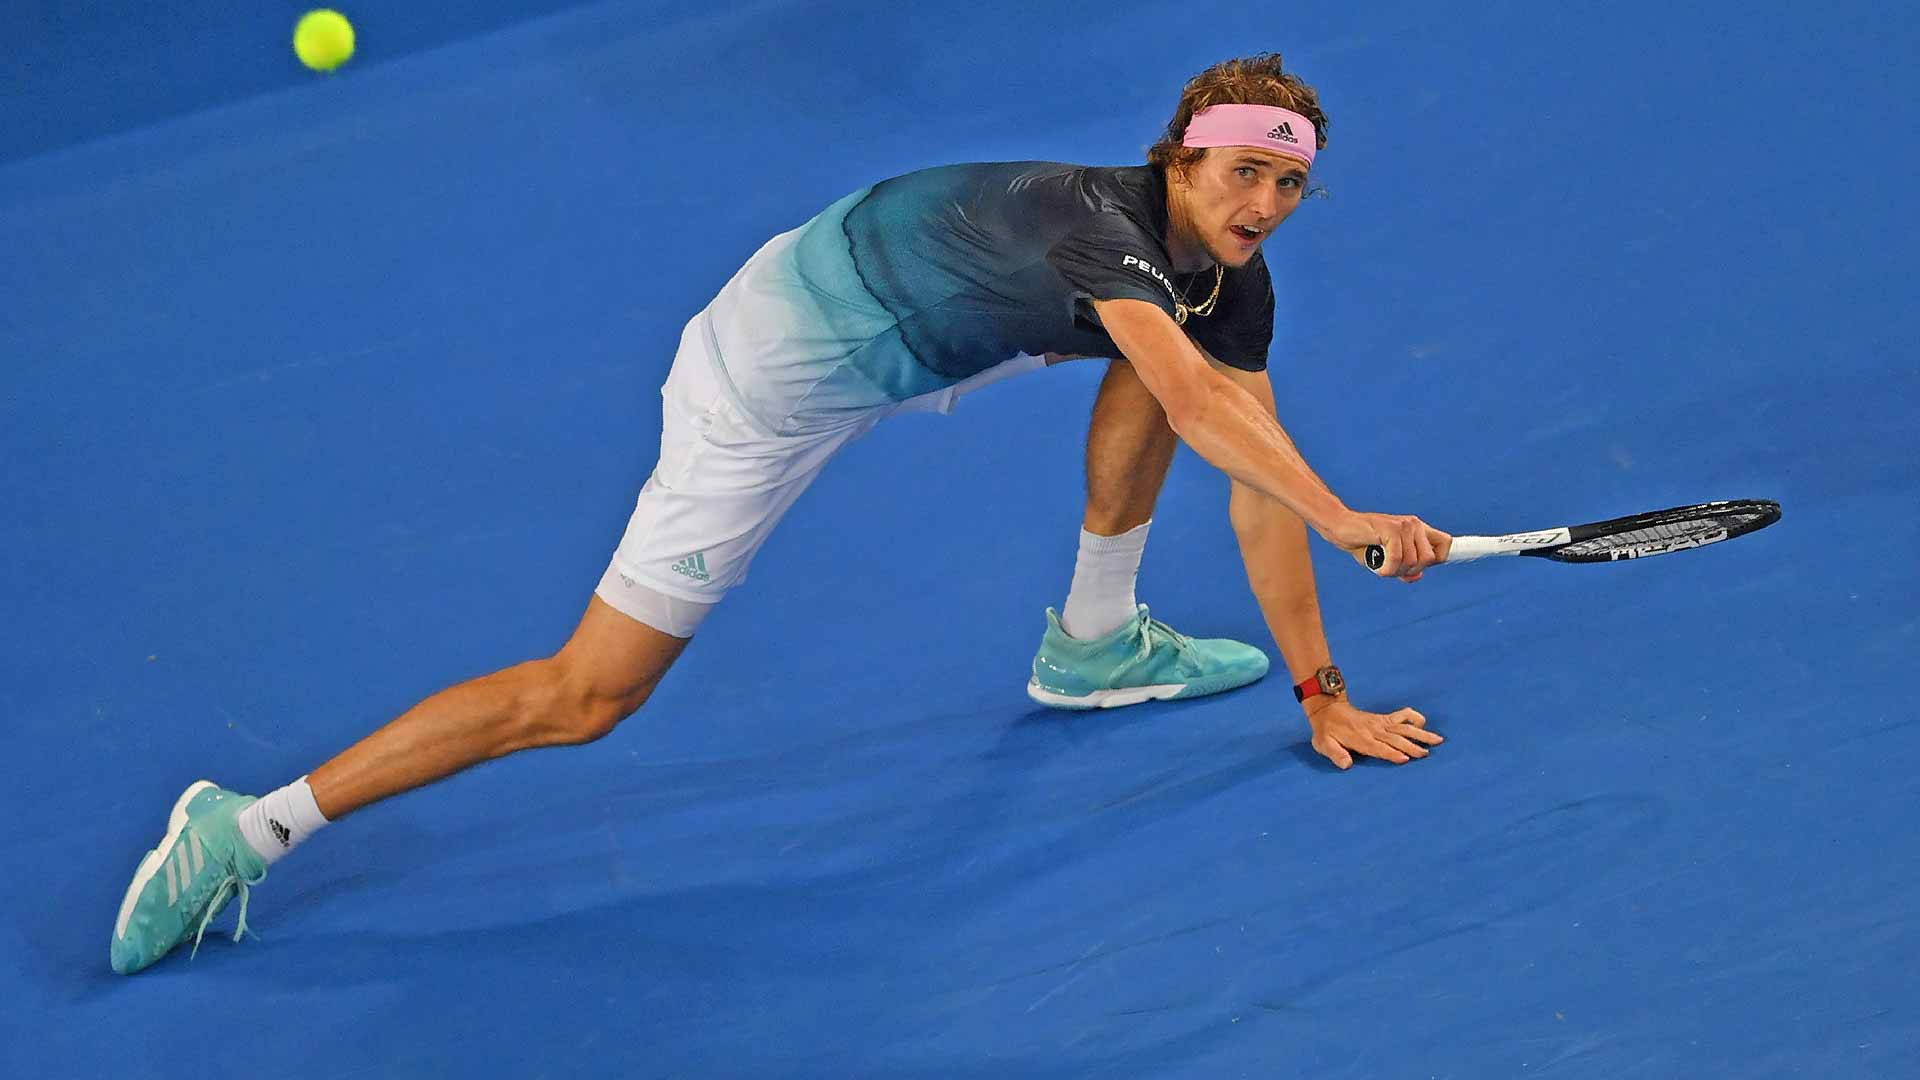 Alexander Zverev Beats Jeremy Australian Open 2019 Thursday | ATP Tour | Tennis